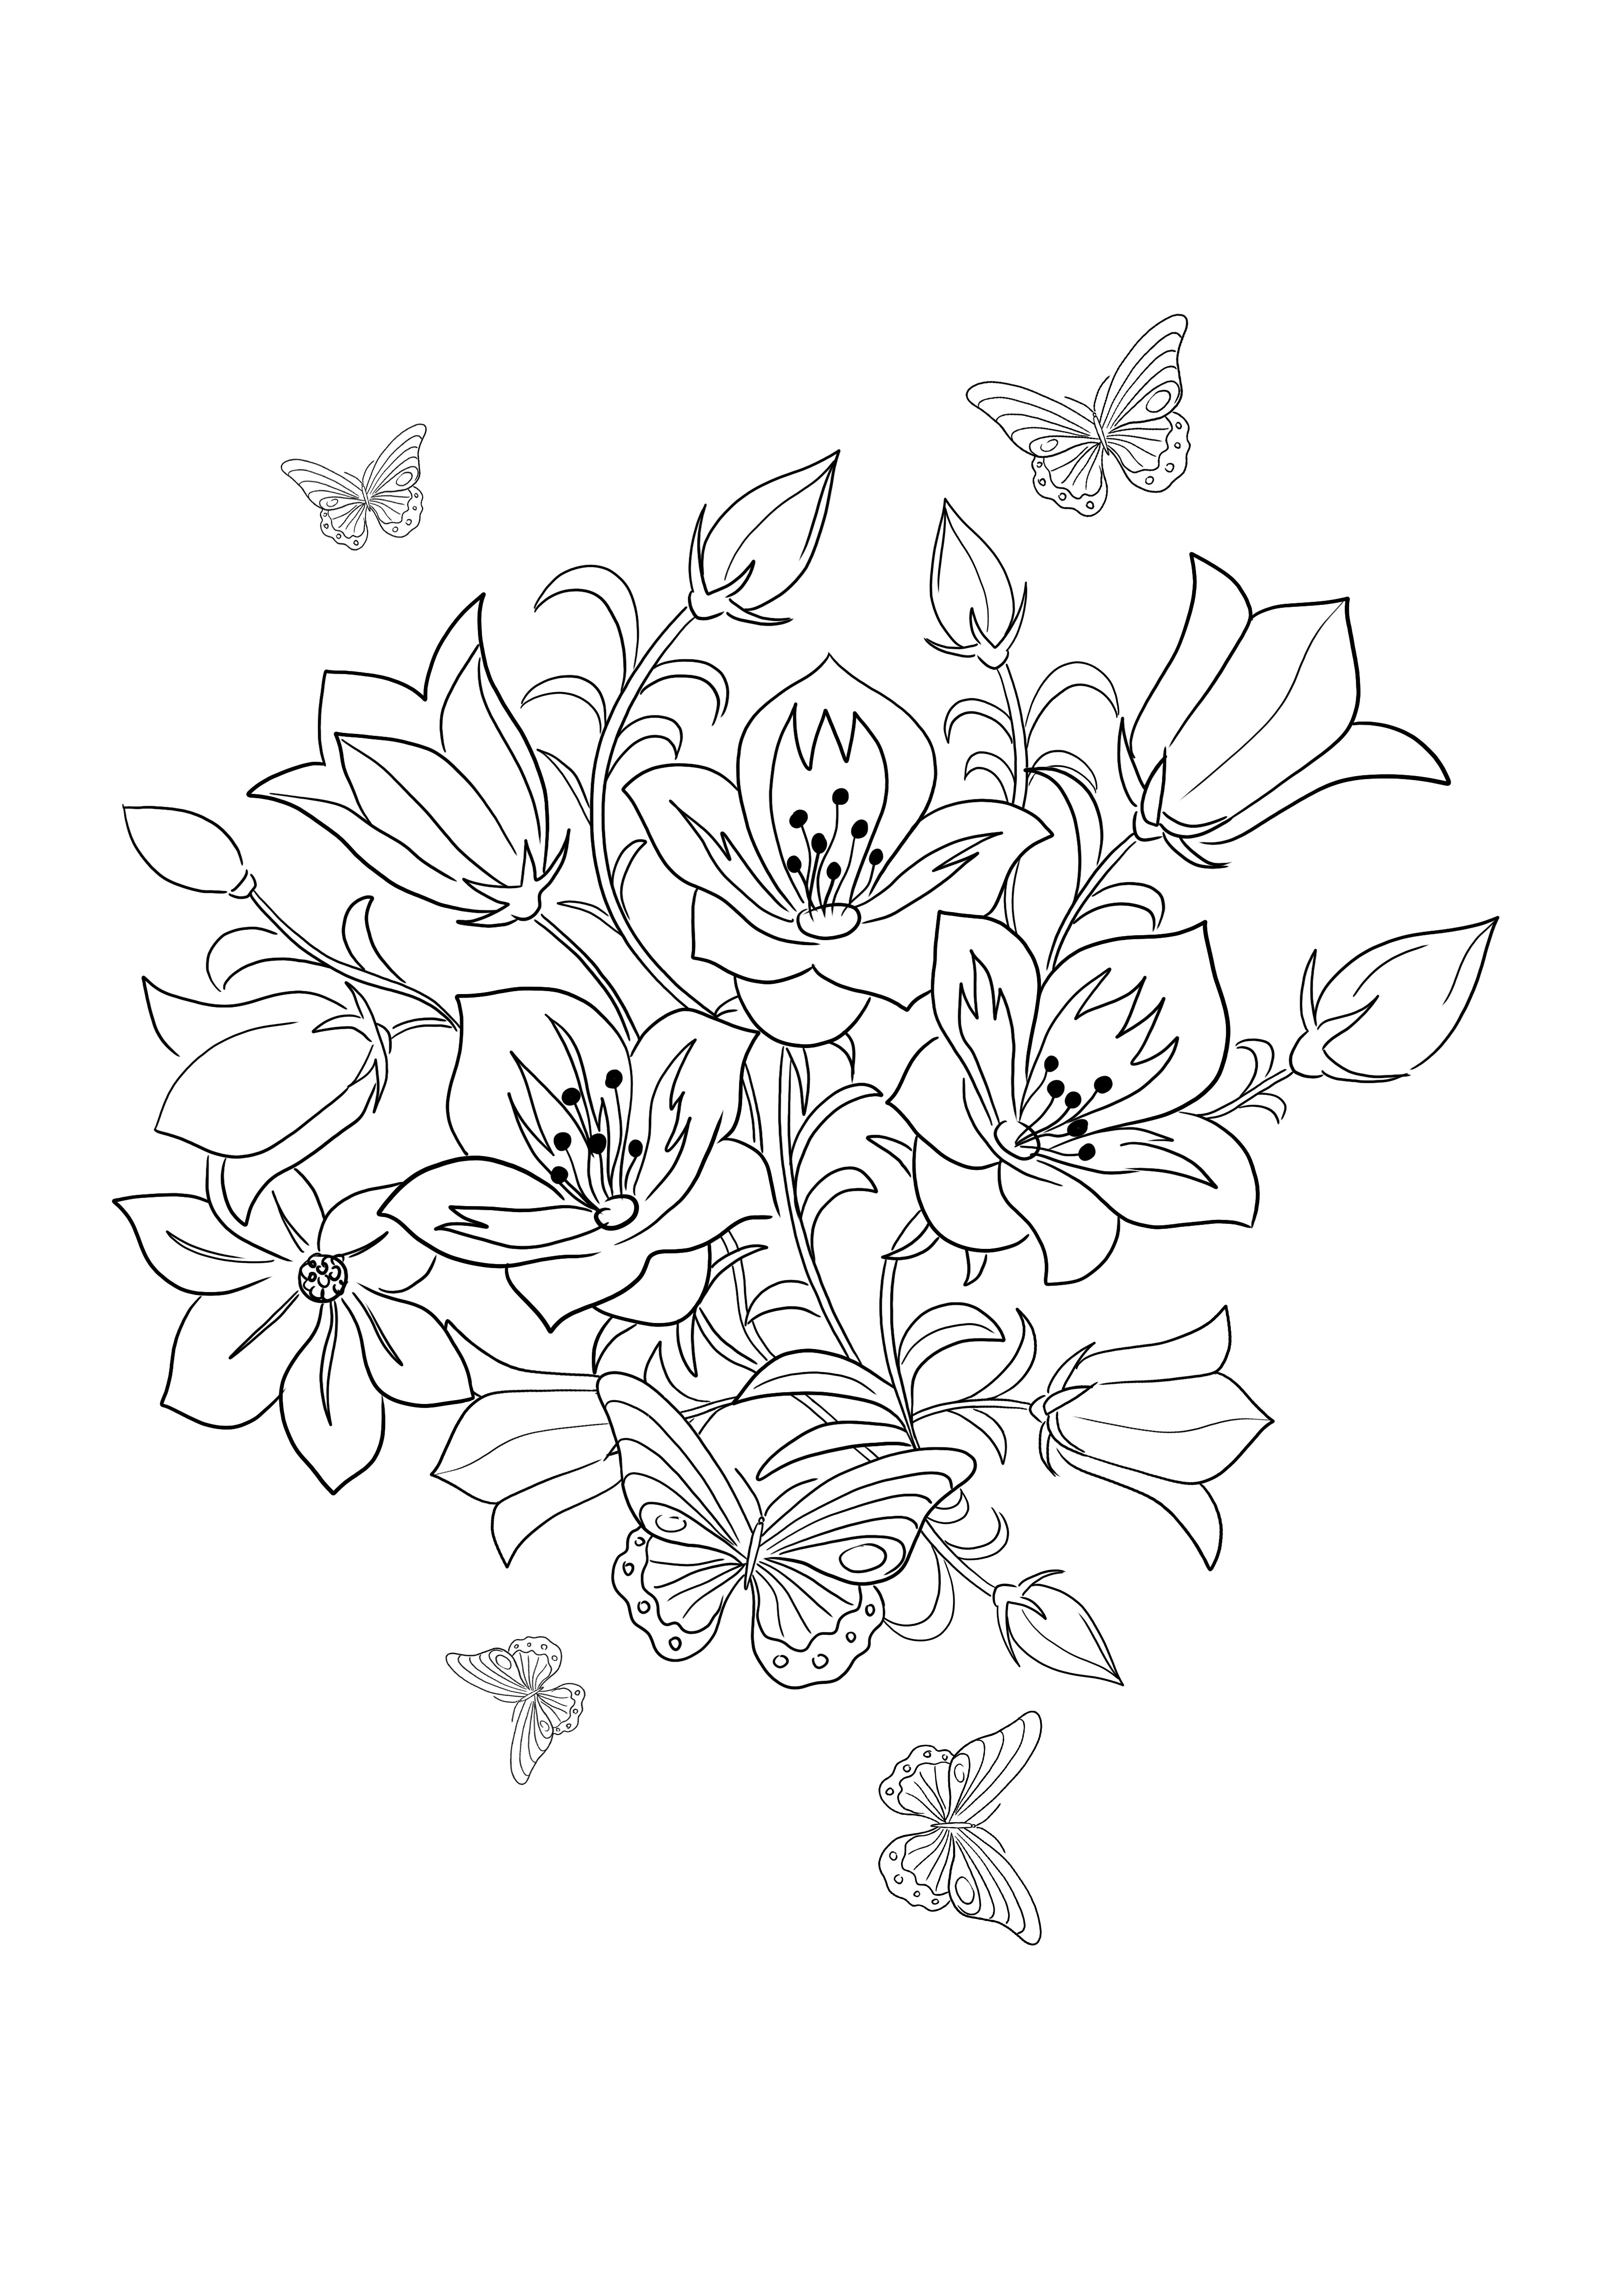 La pagina da colorare di Skylark and Flowers facile e semplice è pronta per essere utilizzata